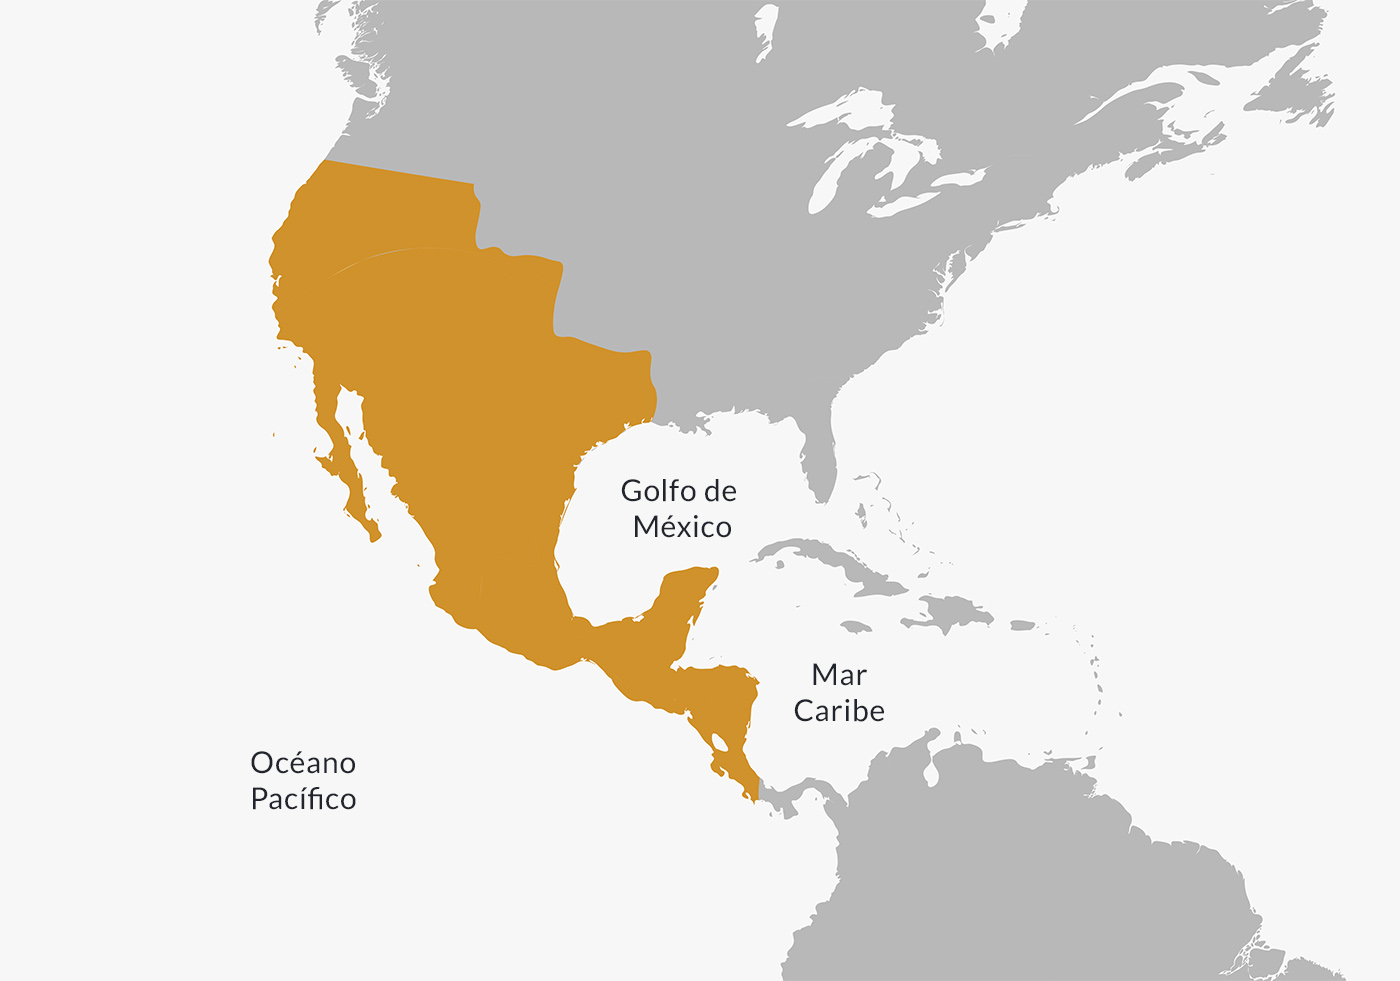 El Imperio Mexicano en 1822, al incorporar los antiguos territorios de la Capitanía General de Guatemala.